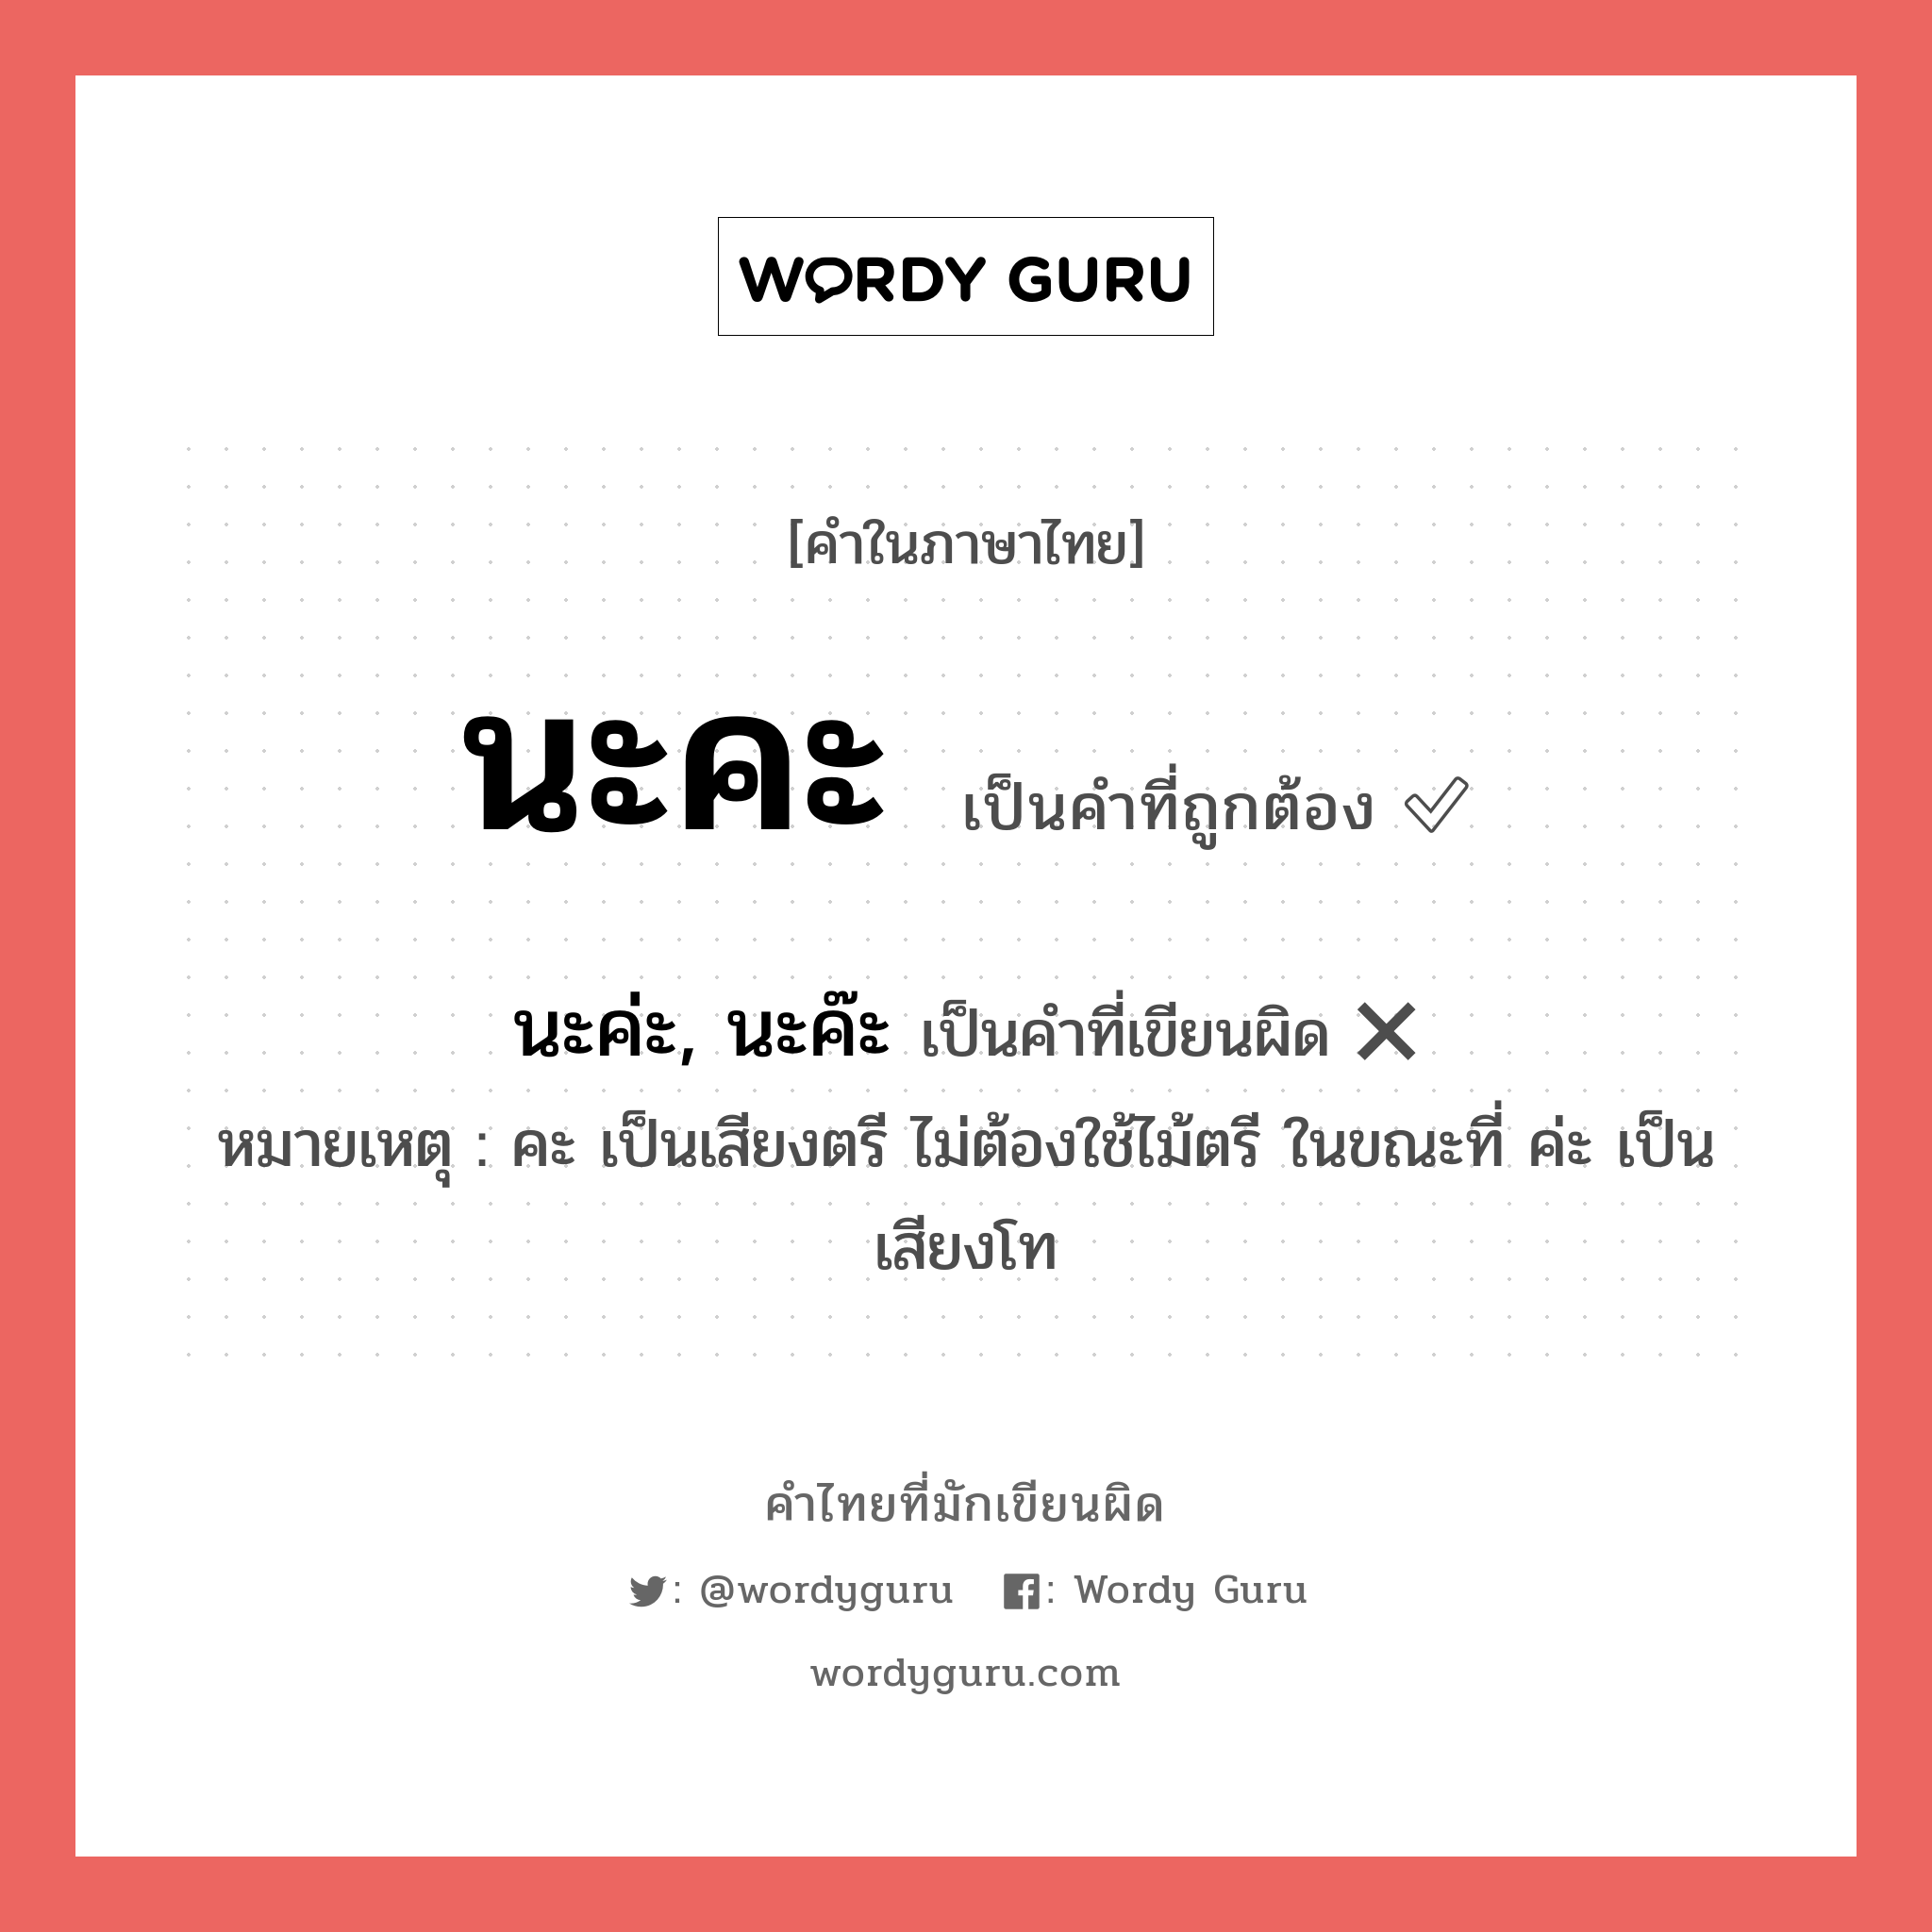 นะค่ะ, นะค๊ะ หรือ นะคะ คำไหนเขียนถูก?, คำในภาษาไทยที่มักเขียนผิด นะค่ะ, นะค๊ะ คำที่ผิด ❌ นะคะ หมายเหตุ คะ เป็นเสียงตรี ไม่ต้องใช้ไม้ตรี ในขณะที่ ค่ะ เป็นเสียงโท